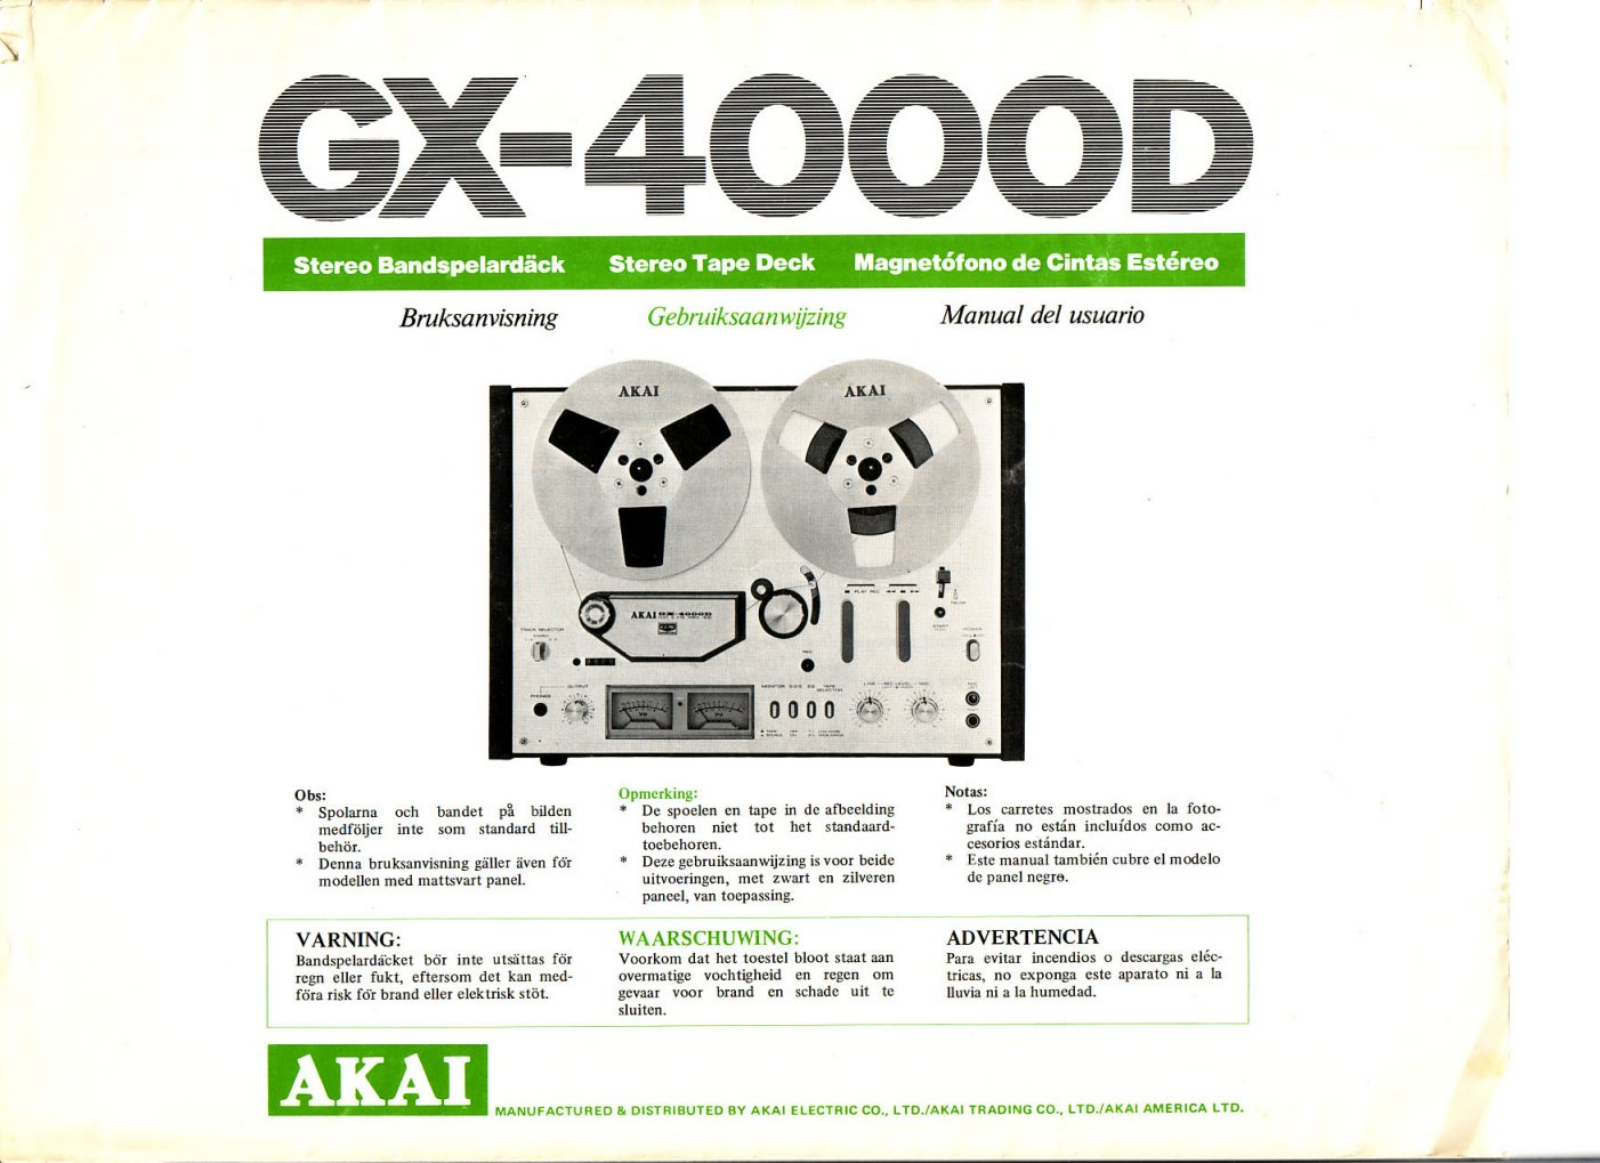 Akai GX-4000-D Owners manual